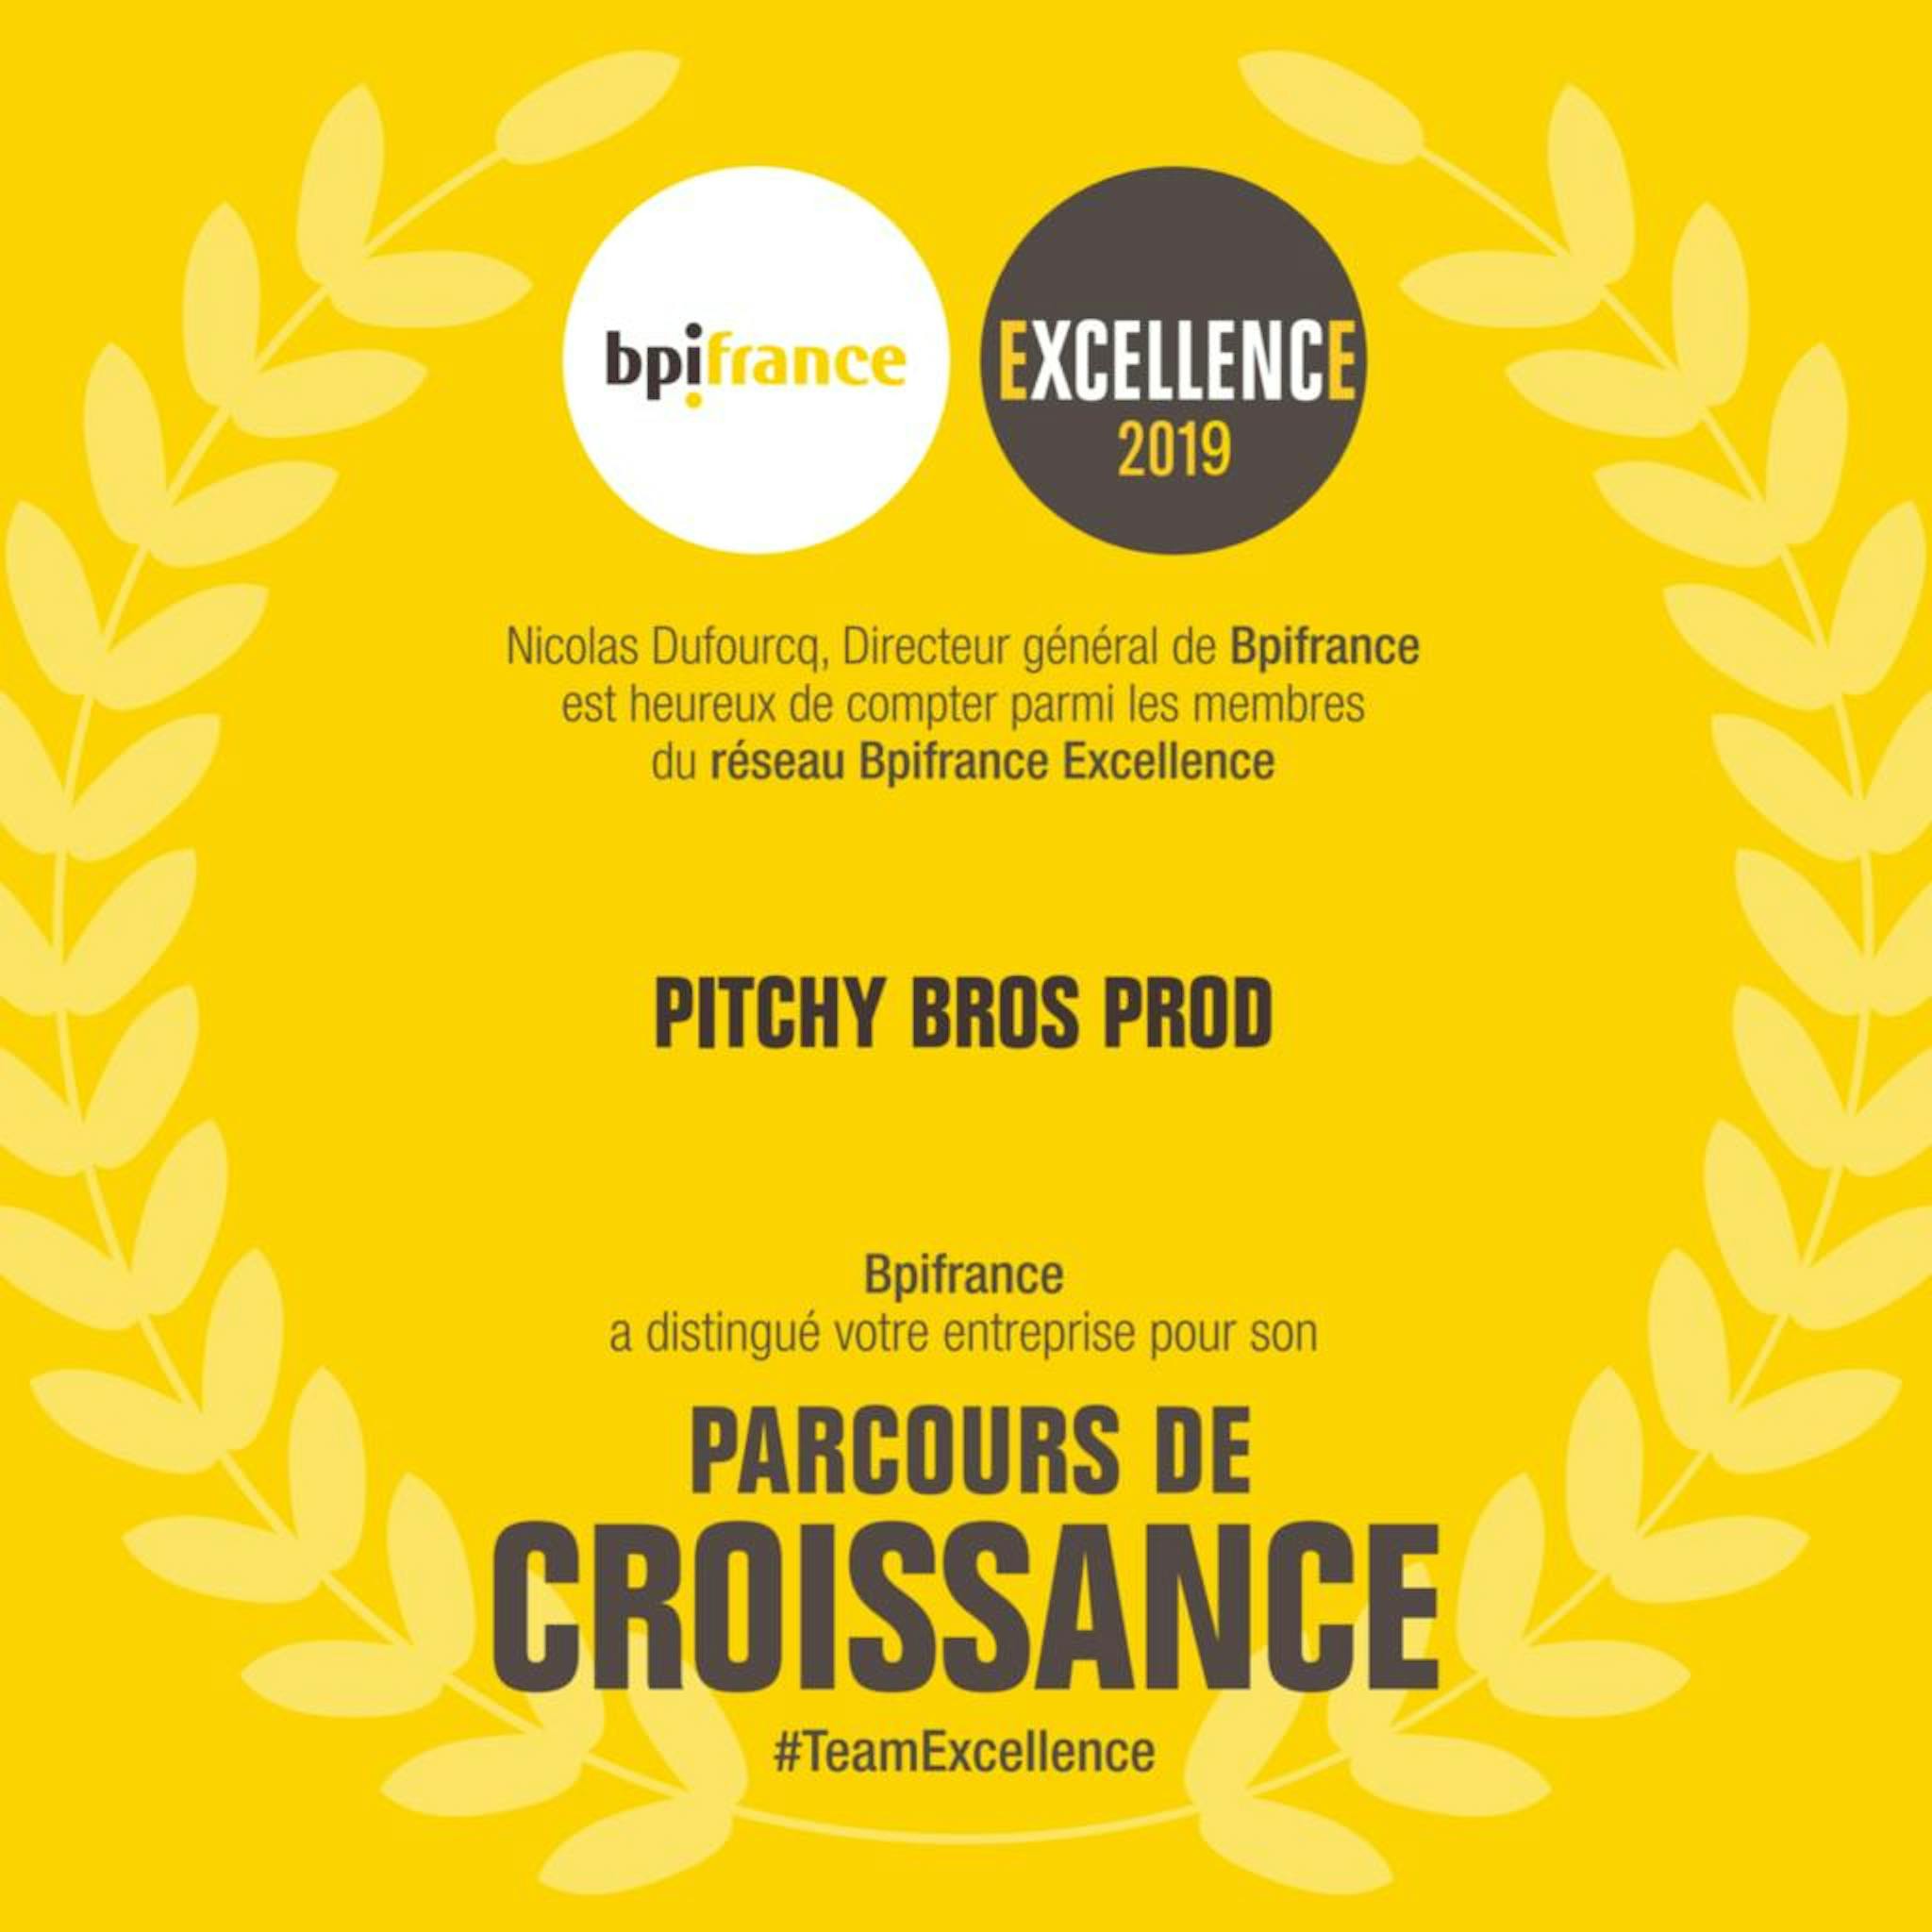 Pitchy reçoit le diplôme Excellence 2019 par la BPI !